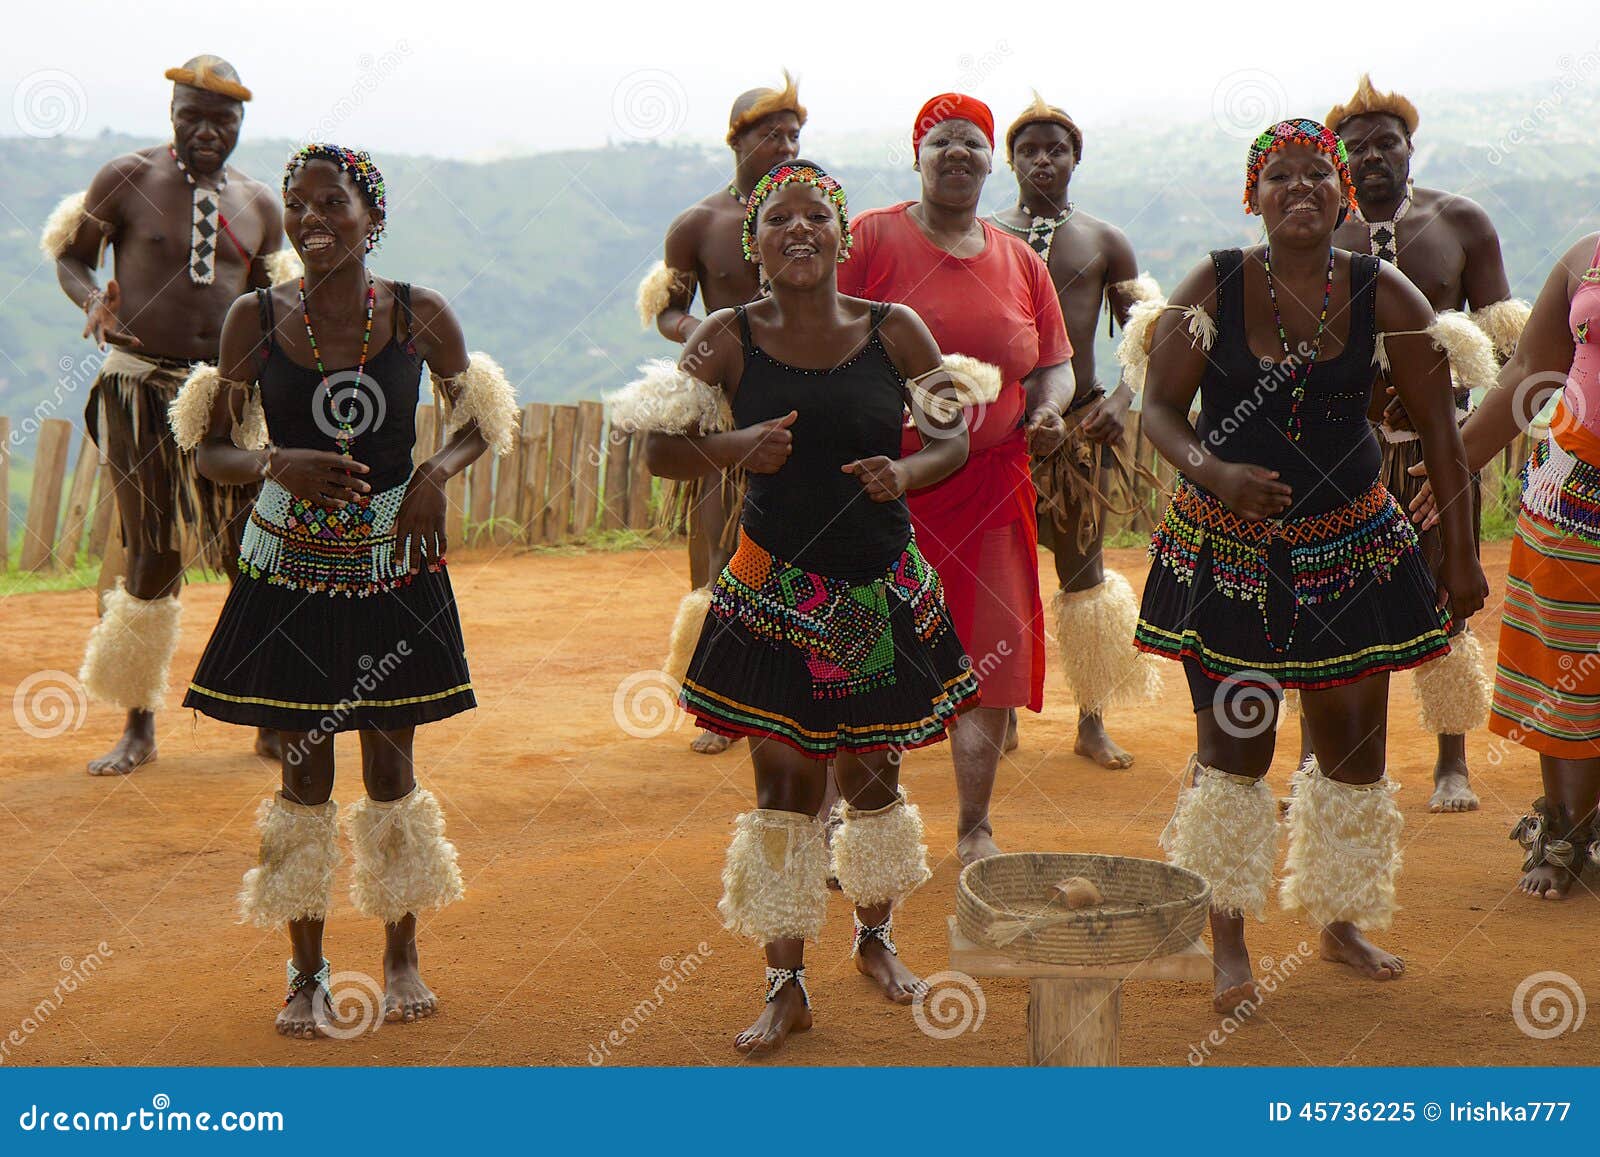 Dance zulu culture BAM